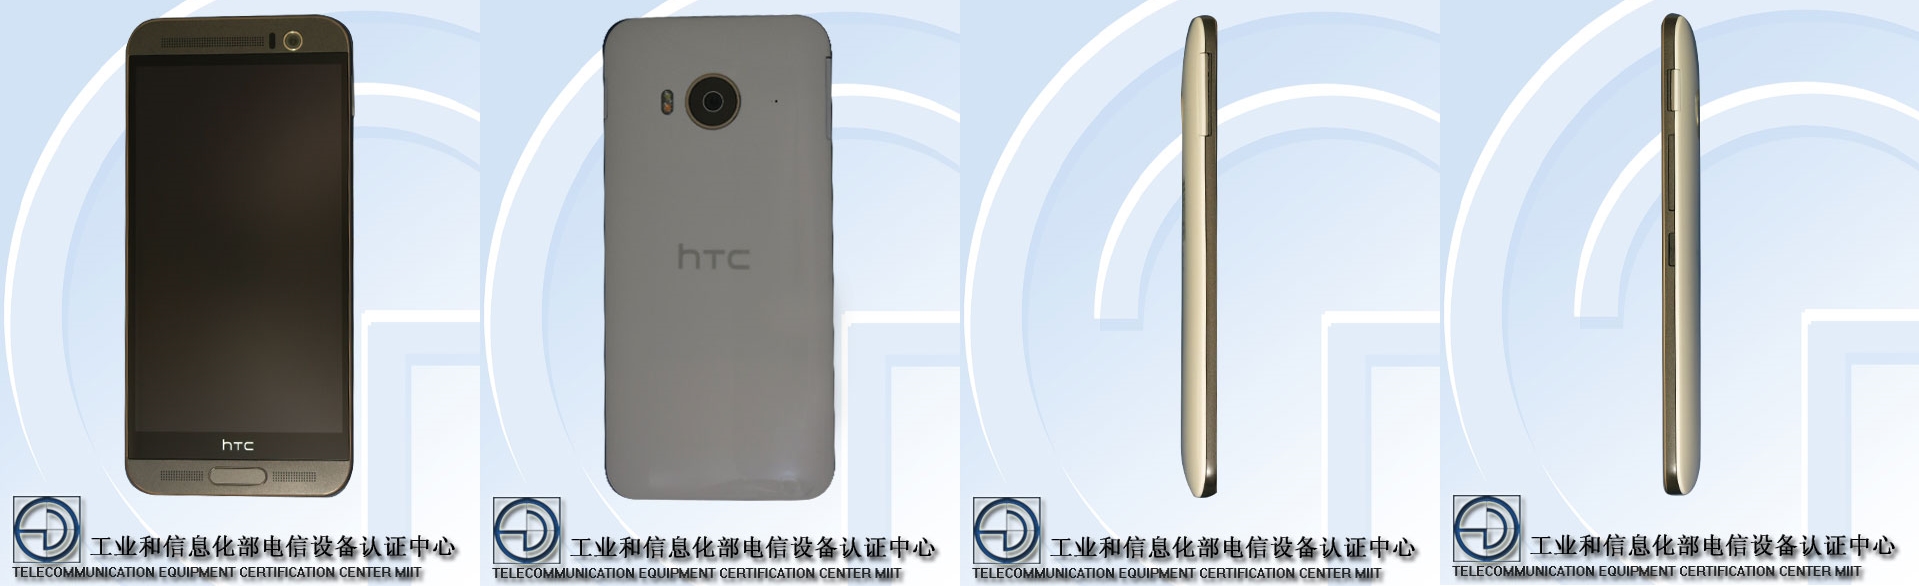 HTC M9ew